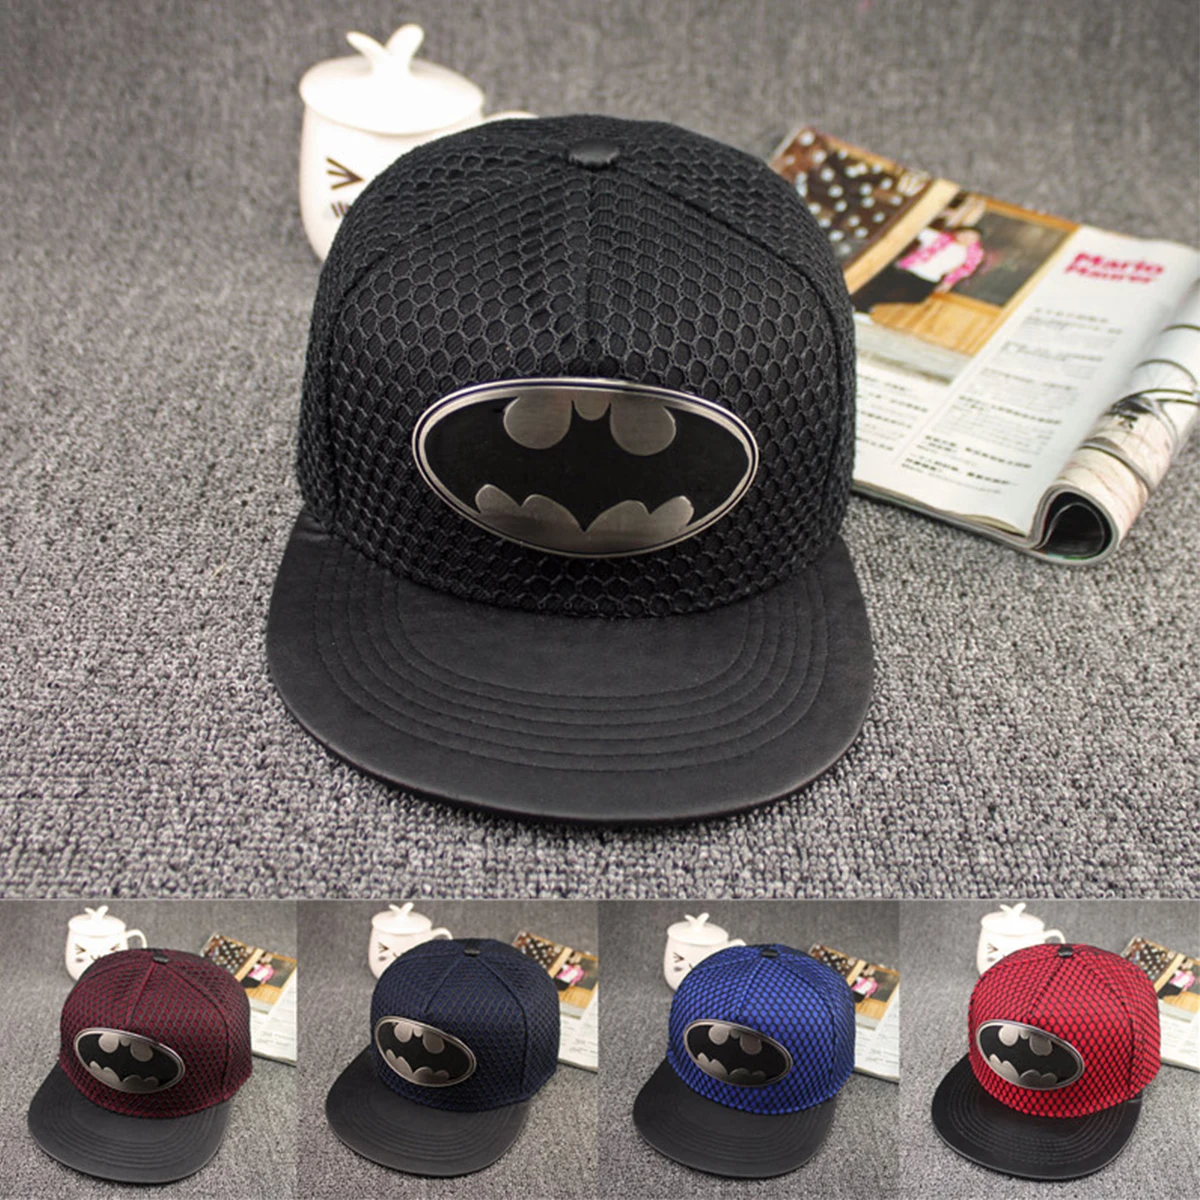 Хит, супер крутая бейсбольная кепка Бэтмена для мужчин и женщин, уличная Кепка в стиле хип-хоп, папа, двойная сетчатая Кепка, Кепка для водителя грузовика, регулируемая бейсболка, кепка s